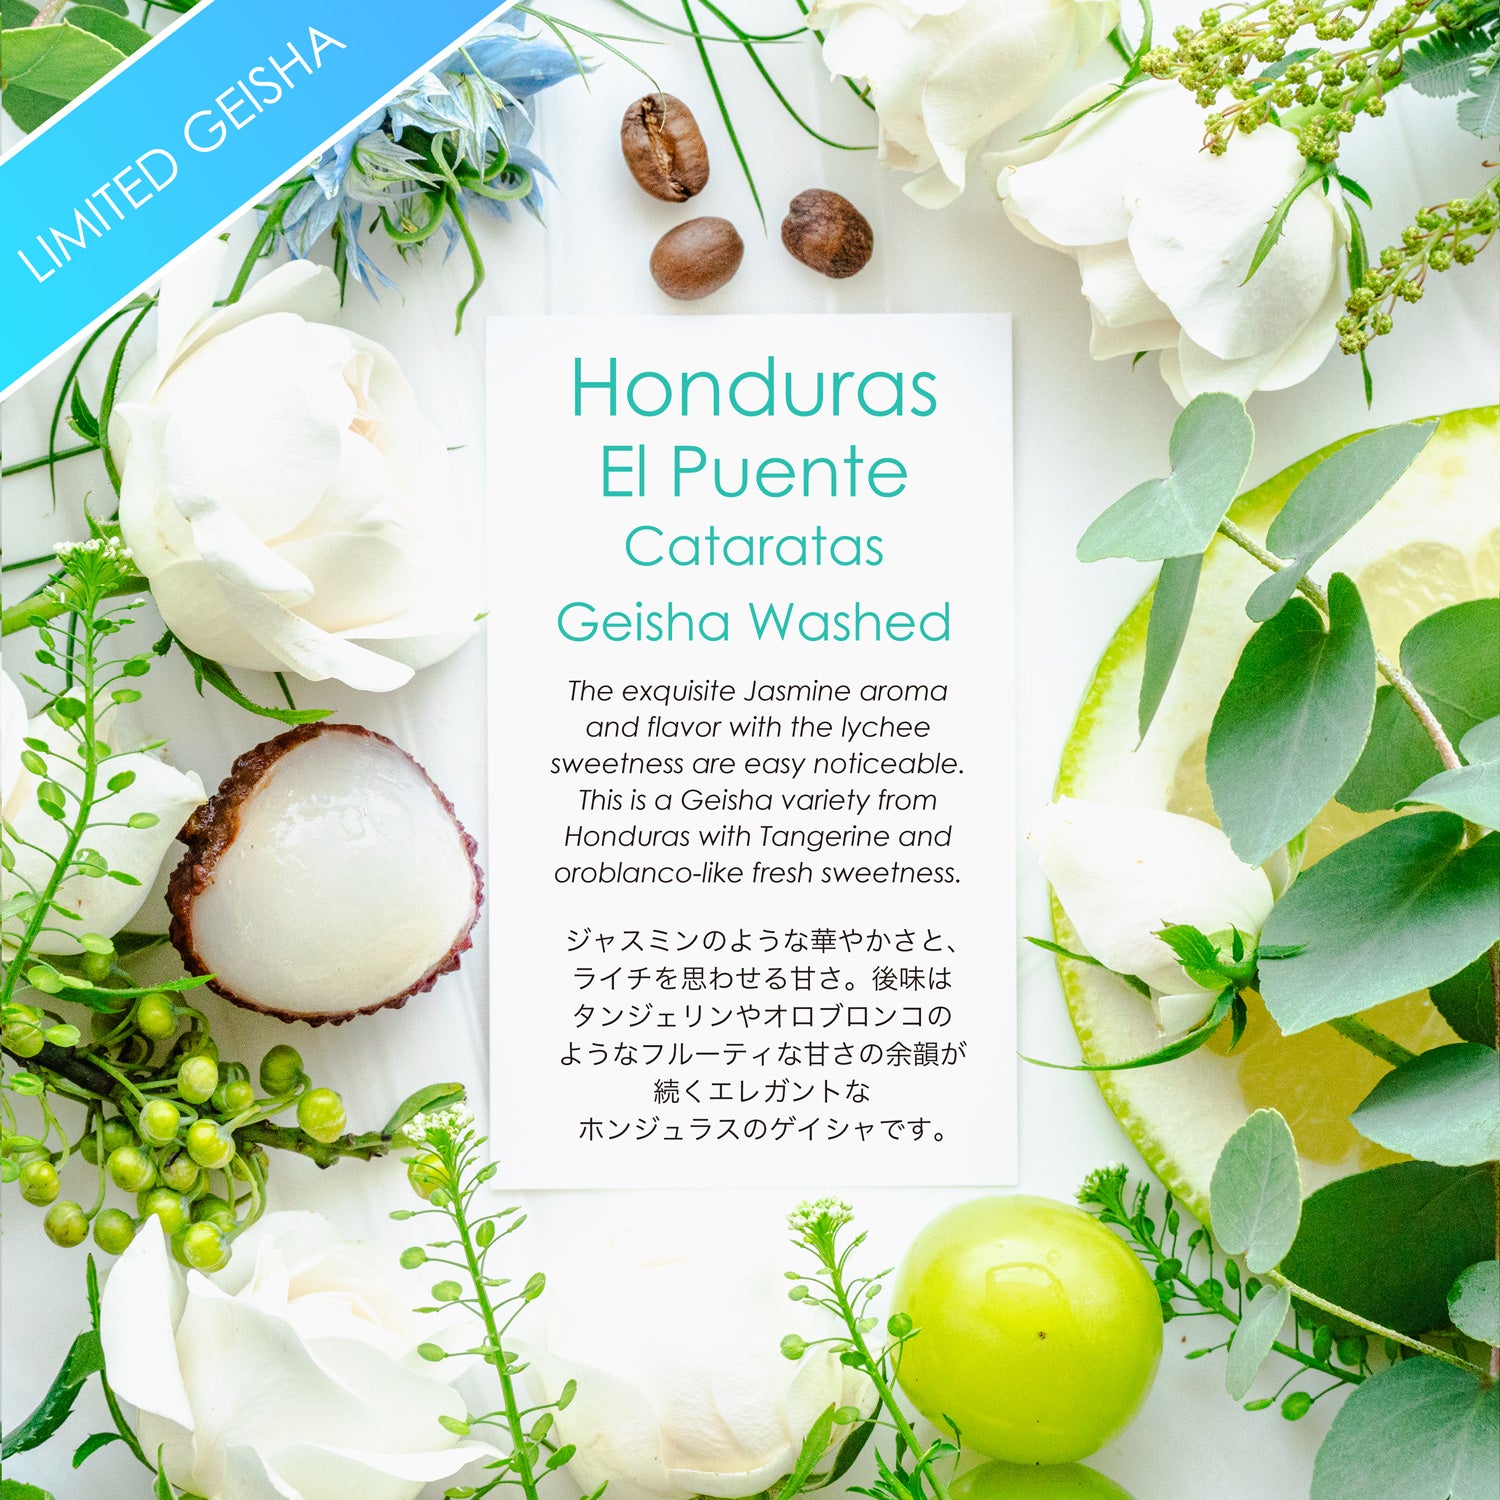 Honduras El Puente/Cataratas Geisha Washed [Citrus & Jasmine]